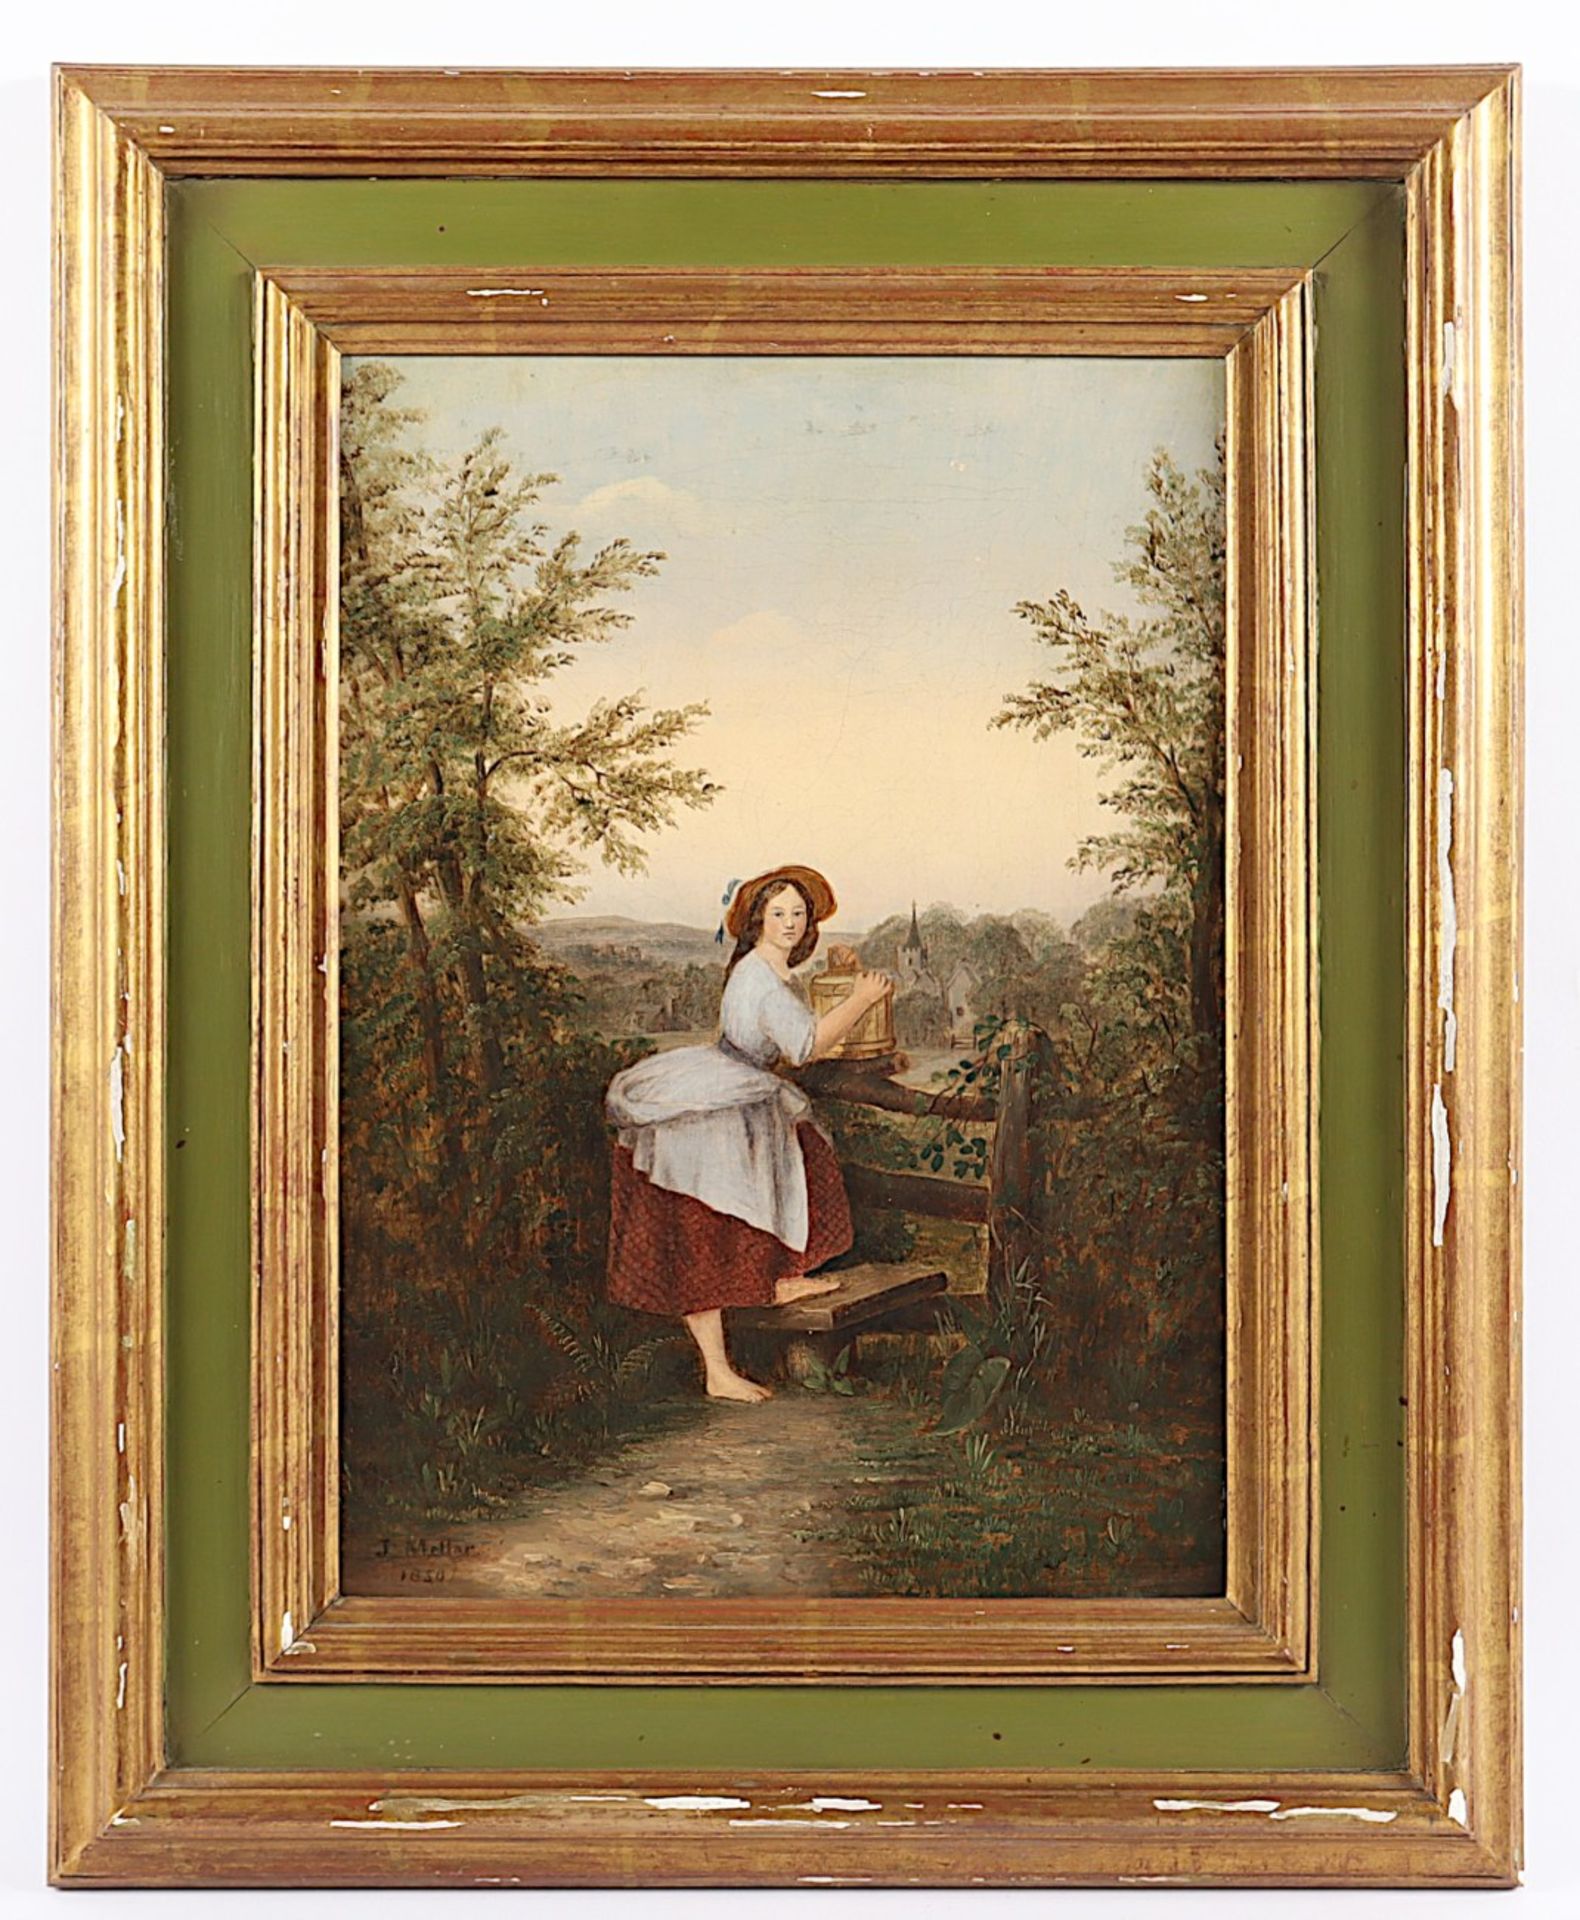 MELLAR, J. (Maler des 19.Jh.) "Junge Wasserträgerin vor einer Landschaft", Öl/Lwd., 39 x 27, doubli - Bild 2 aus 4